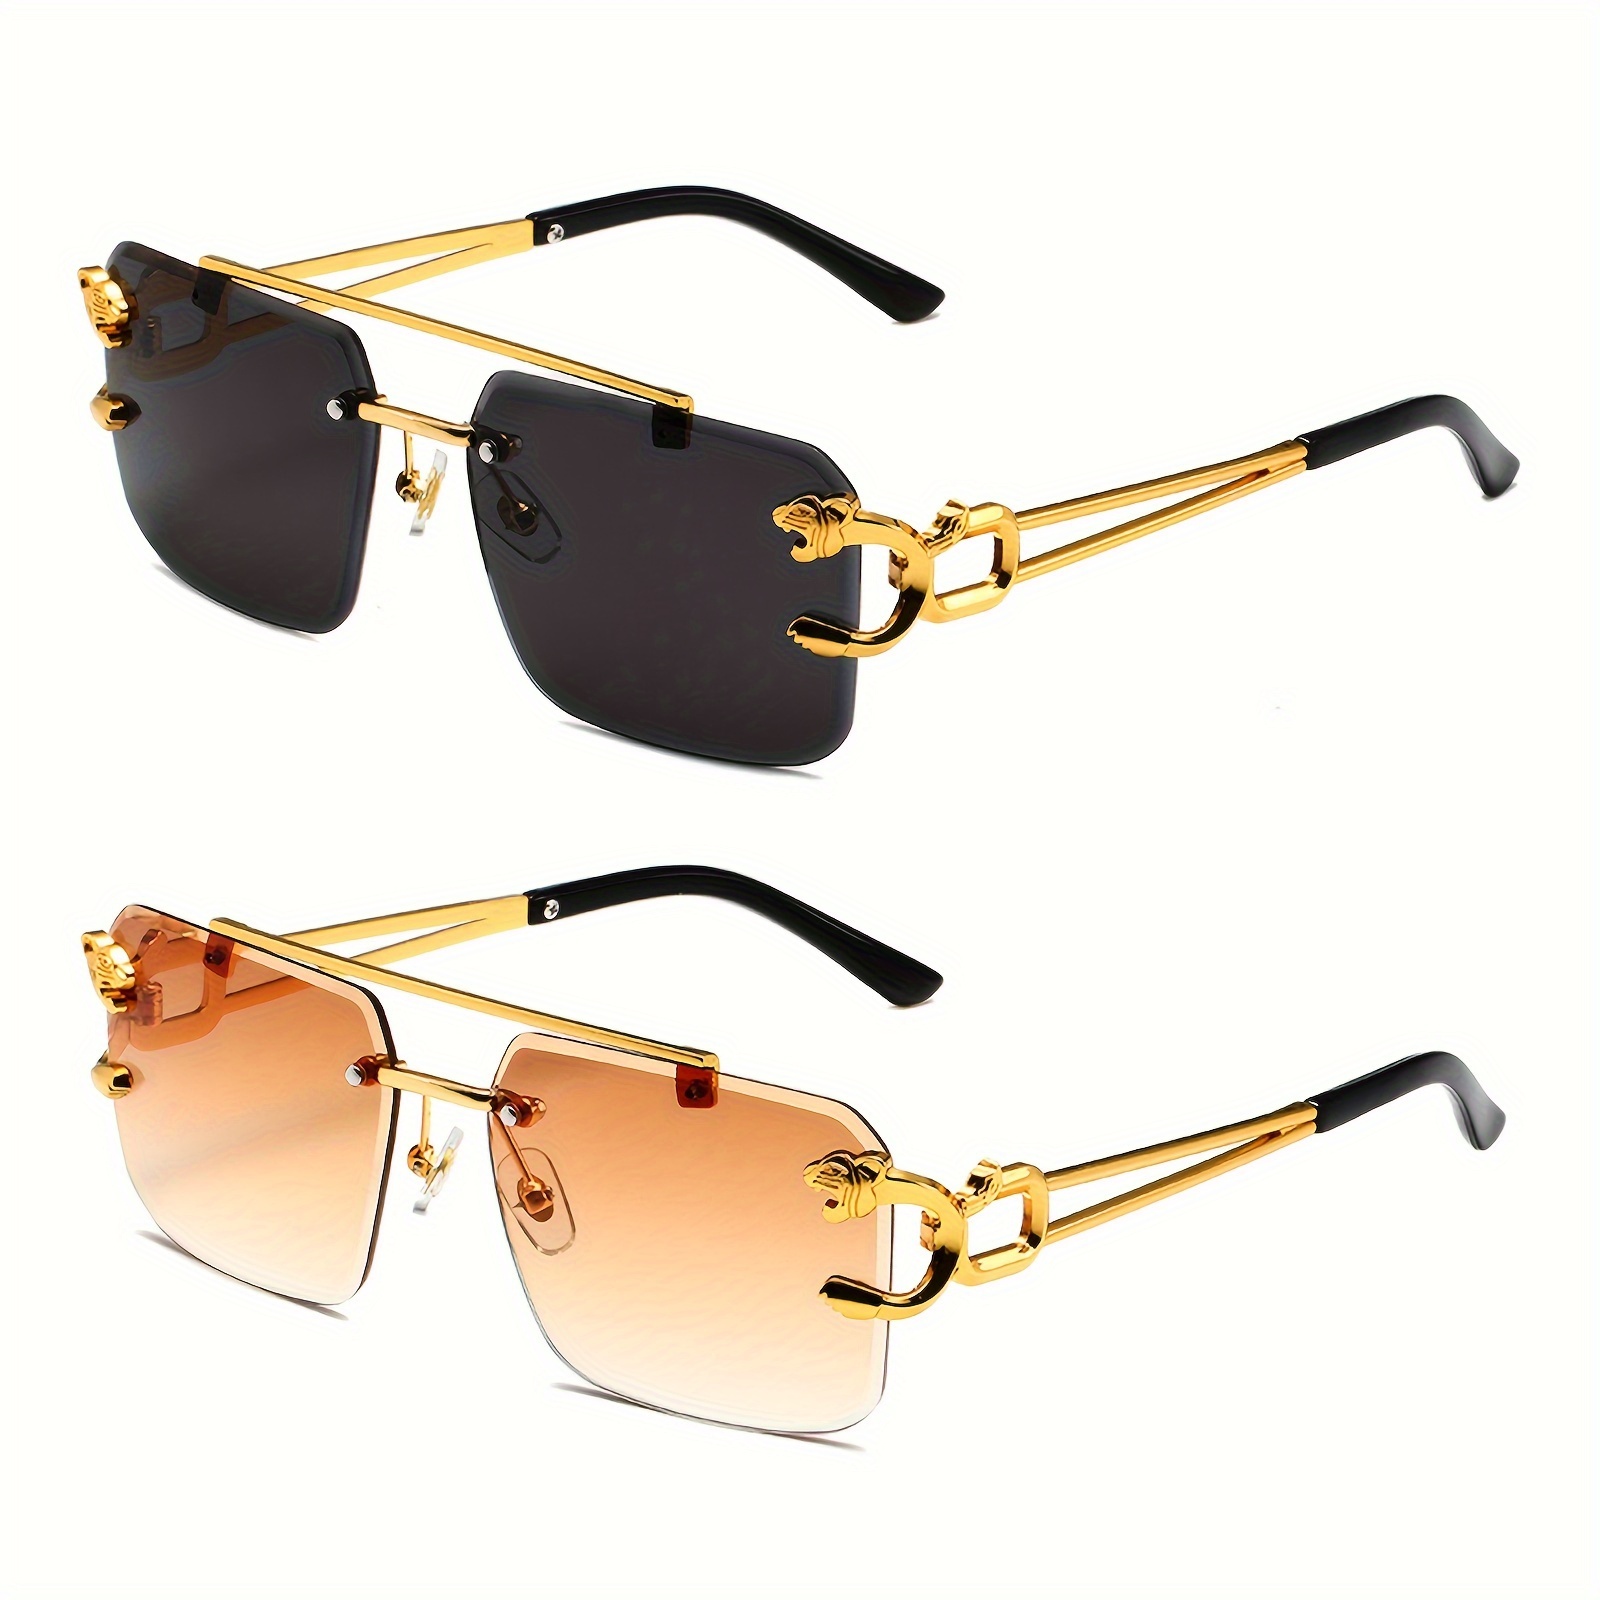 

2pcs Retro Rimless Large Square Sunglasses Women Men Luxury Shades Frameless Square Tinted Glasses